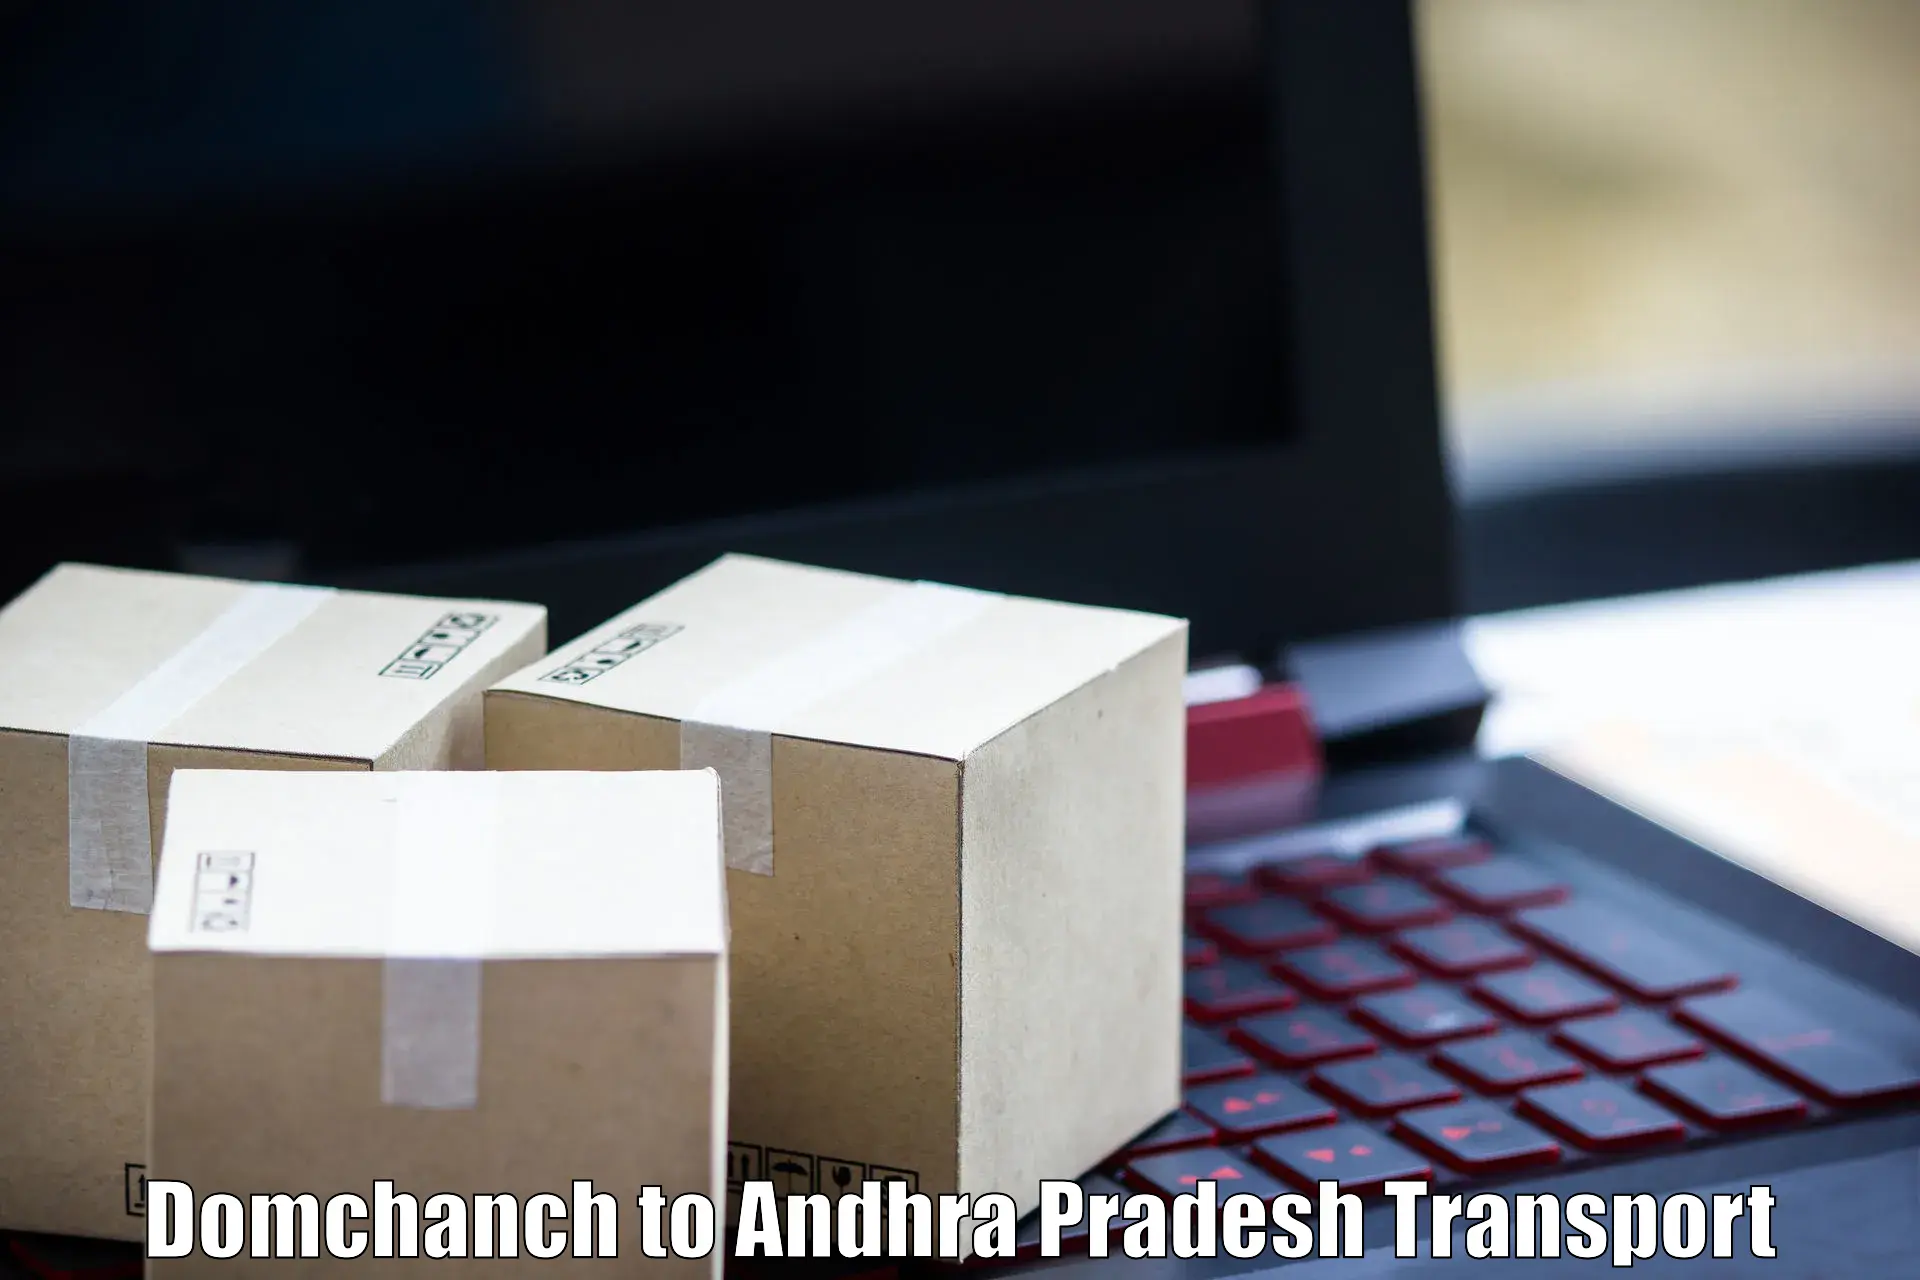 Online transport service Domchanch to Achampet Palnadu